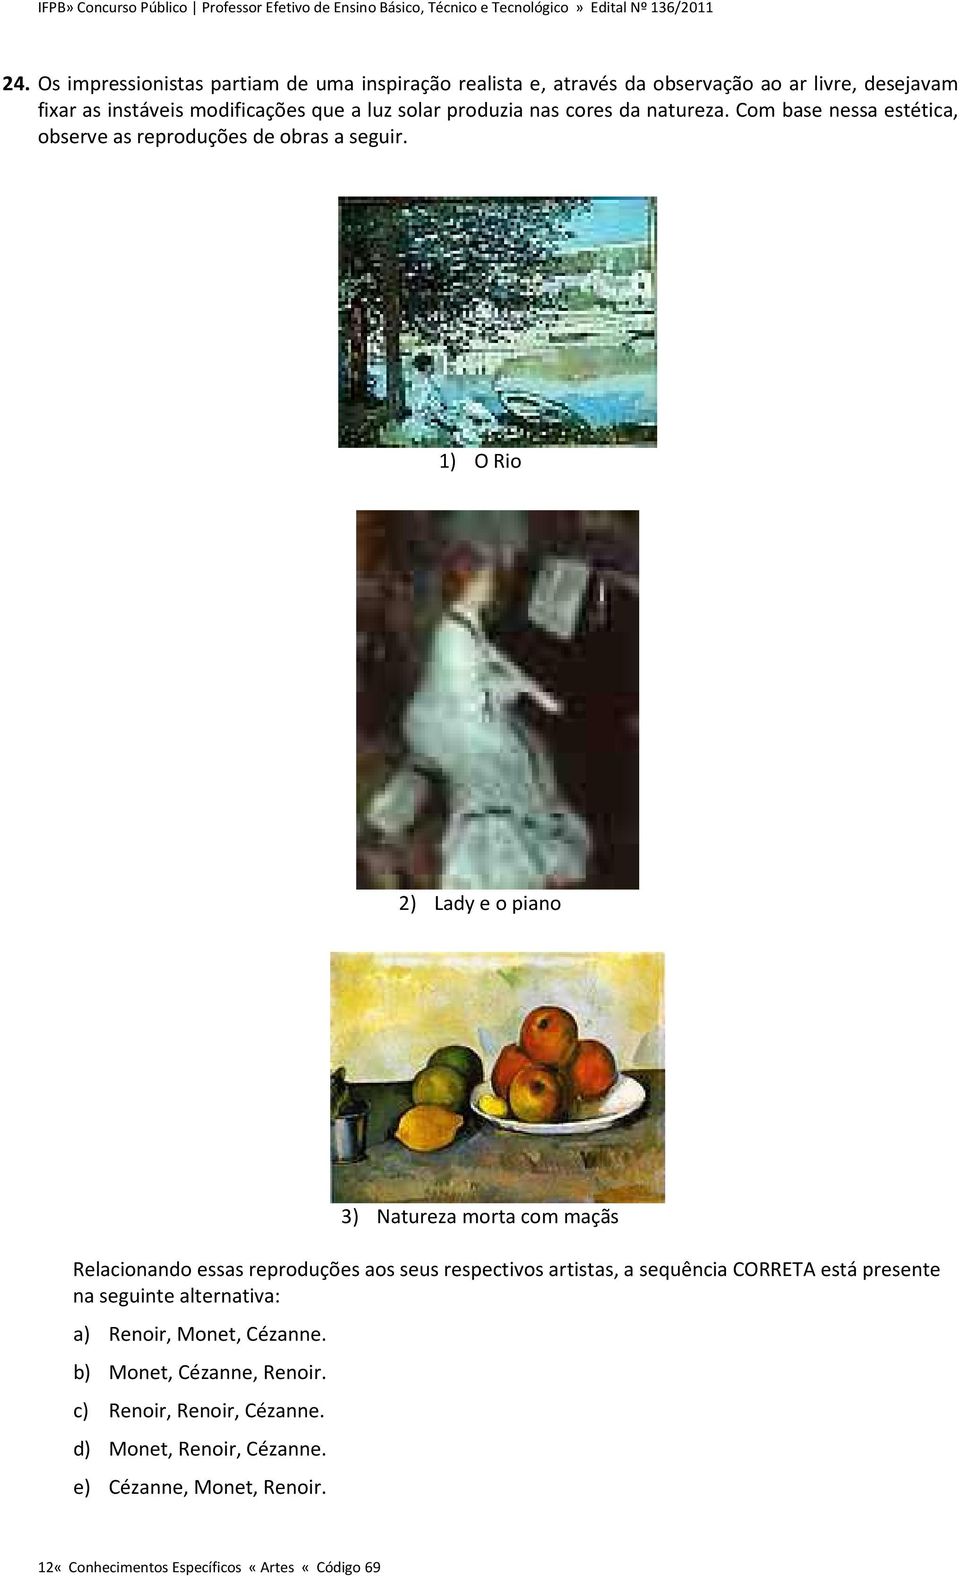 1) O Rio 2) Lady e o piano 3) Natureza morta com maçãs Relacionando essas reproduções aos seus respectivos artistas, a sequência CORRETA está presente